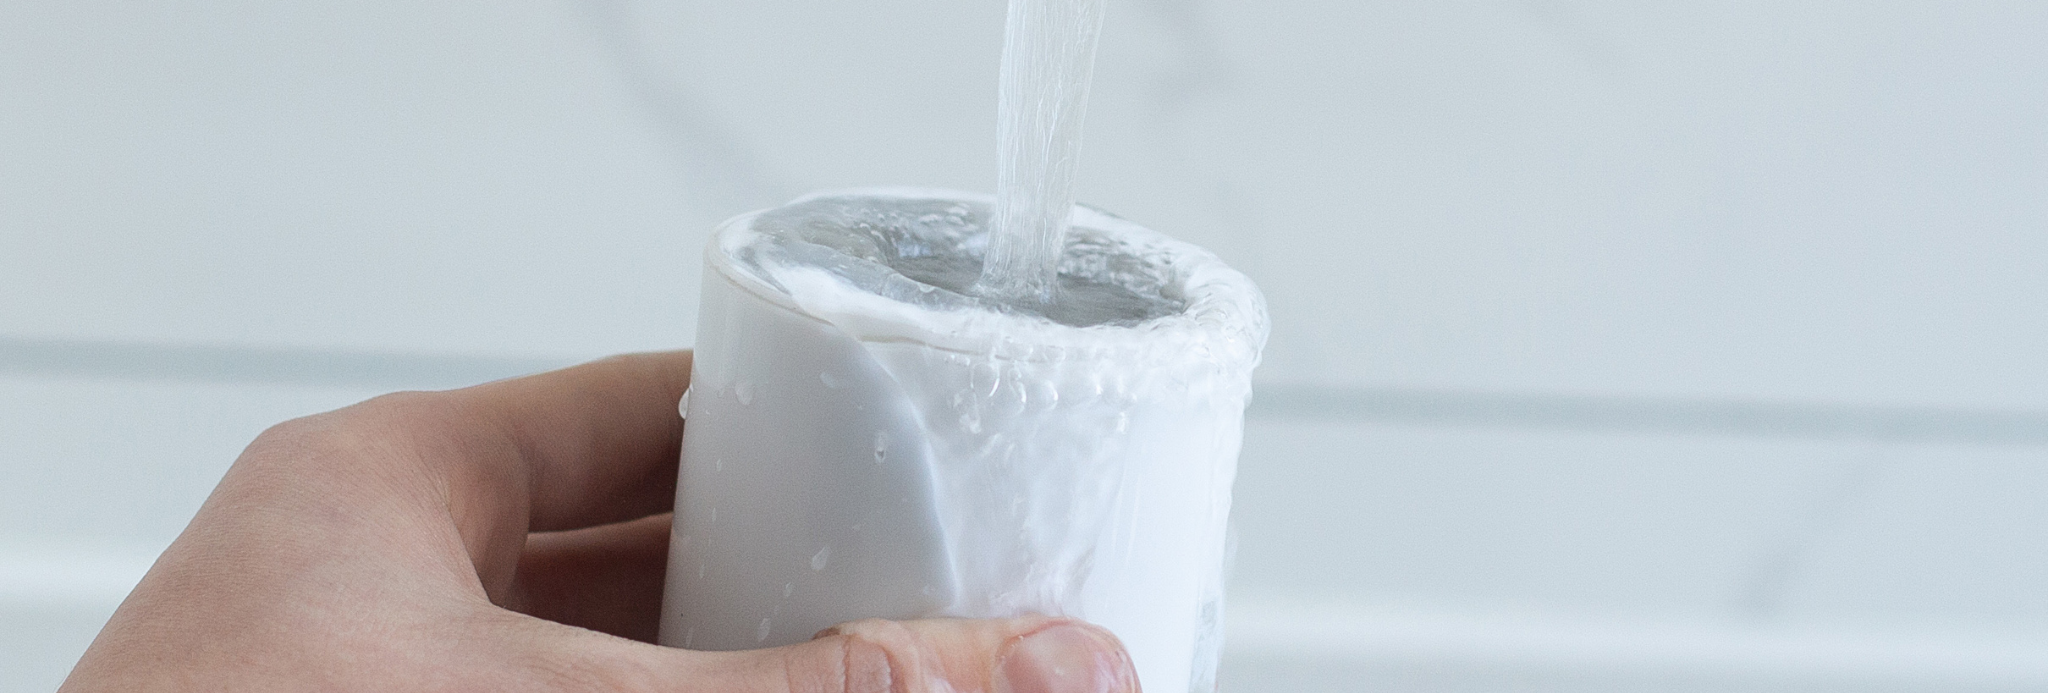 Filtro antical: consejos para proteger tu baño y tuberías de las